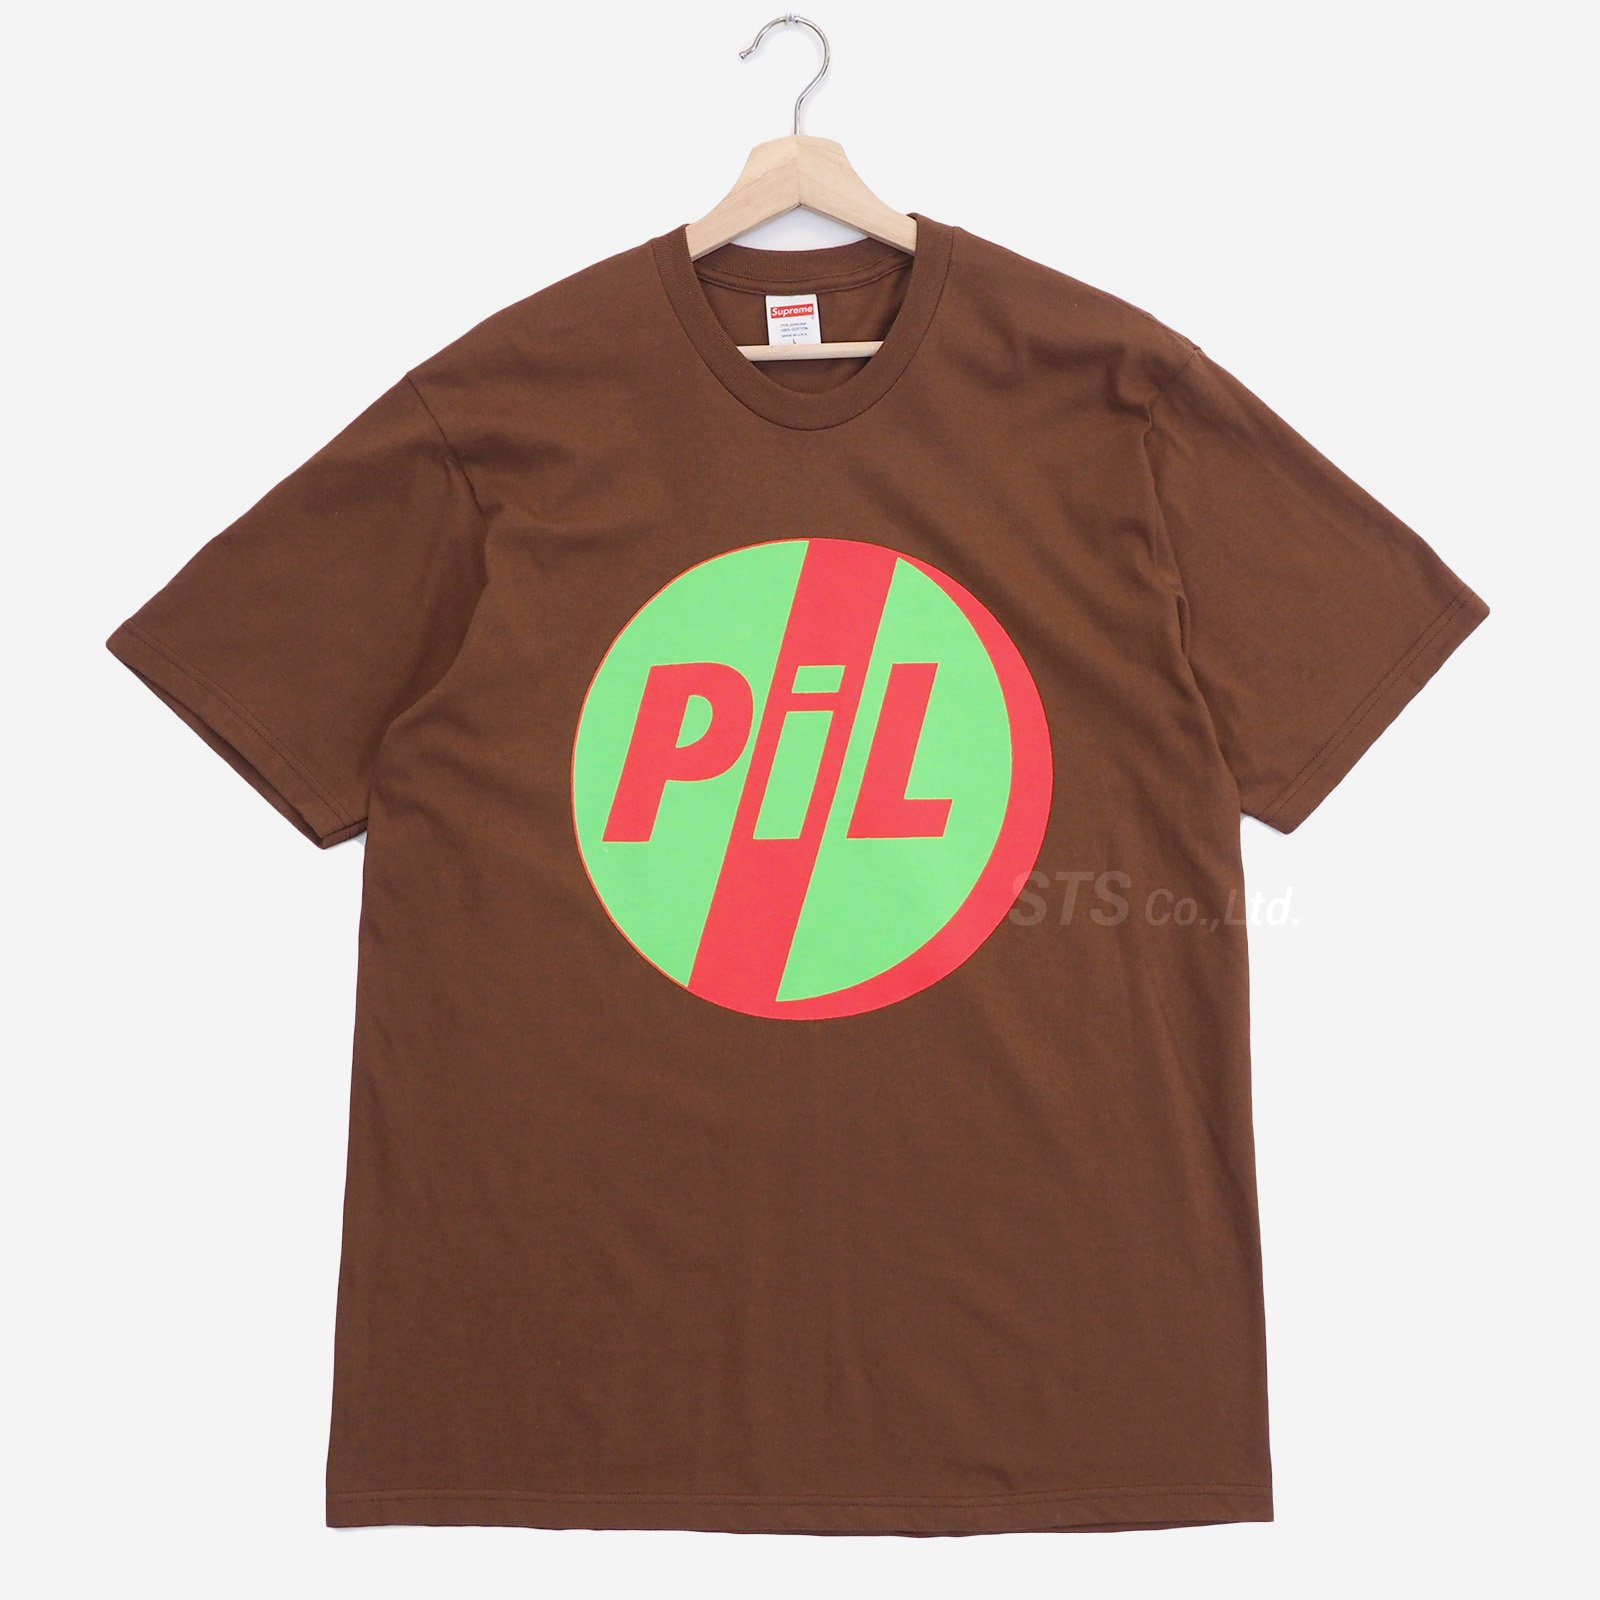 【新品未開封】Supreme / PiL Shirt "Black"Sサイズ